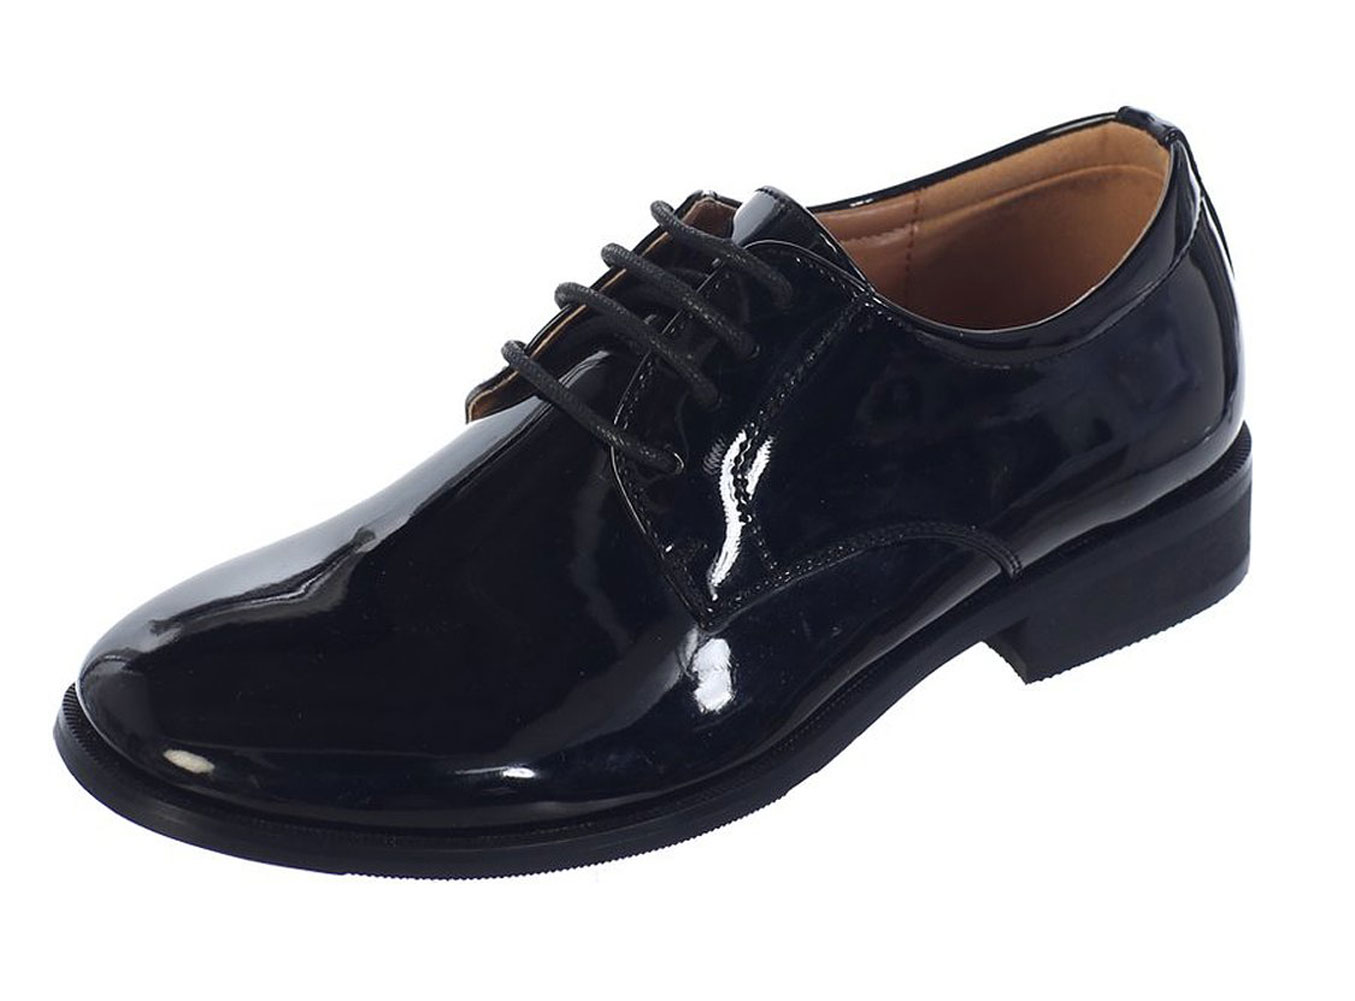 Avery Hill Boys Shiny or Shiny Patent Leather Shoes Bk Shiny Bigkid 2Y